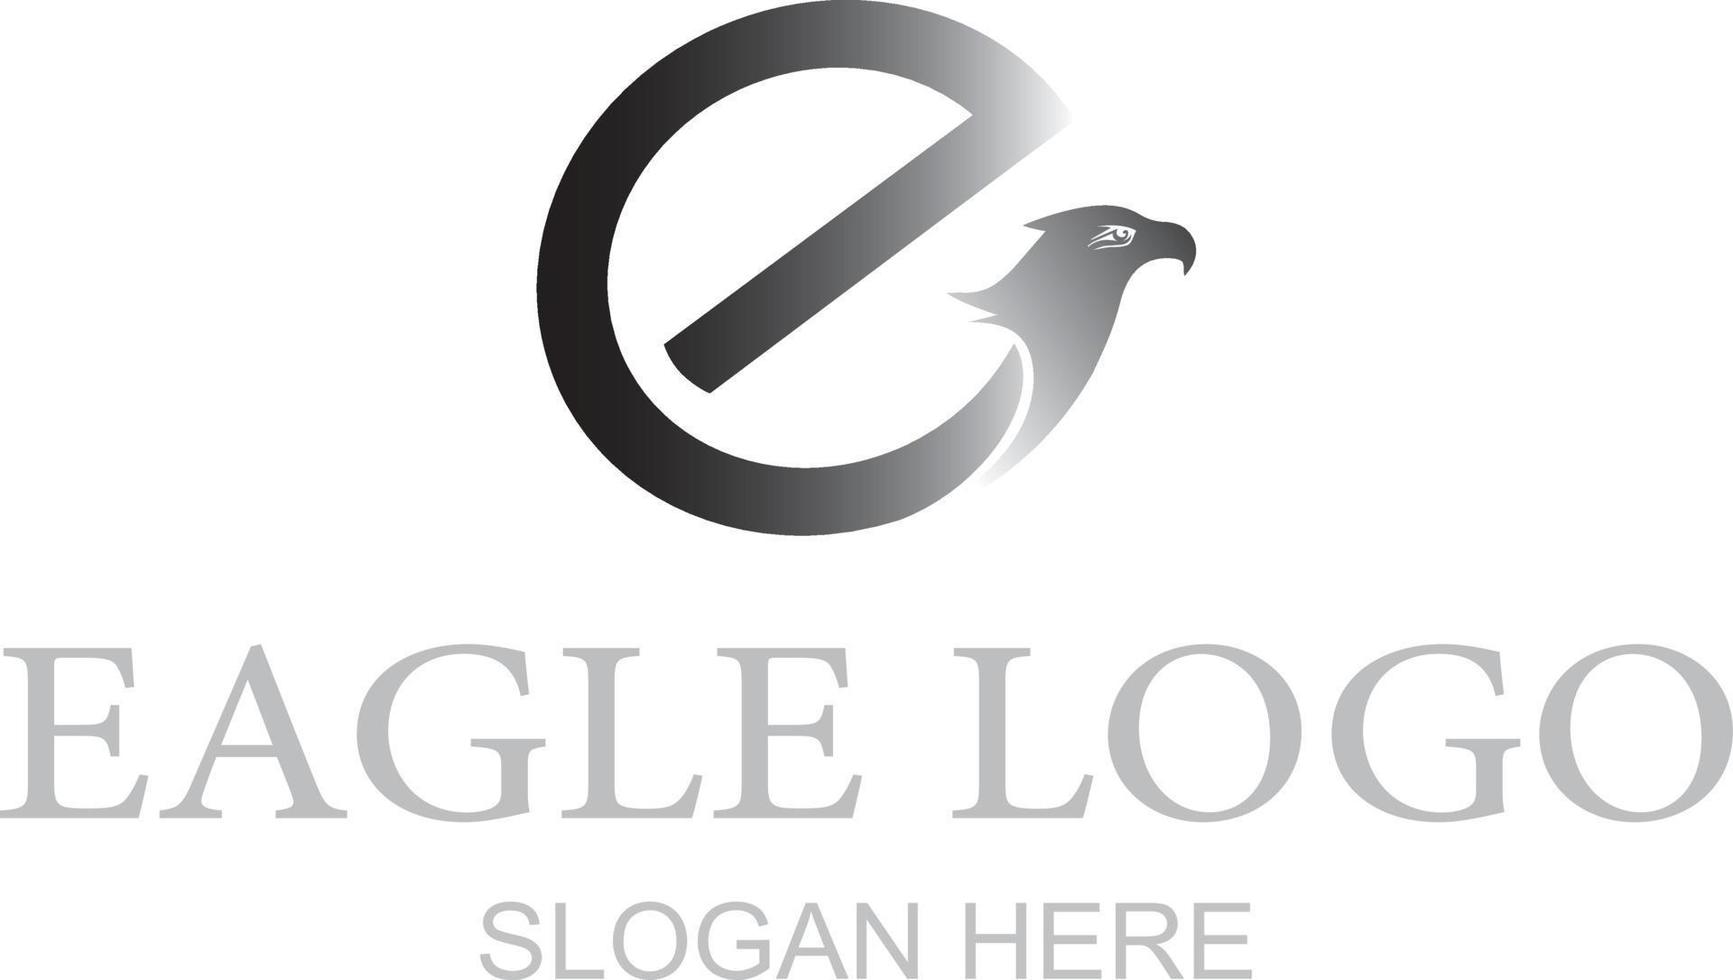 leter e with eagle logo vector